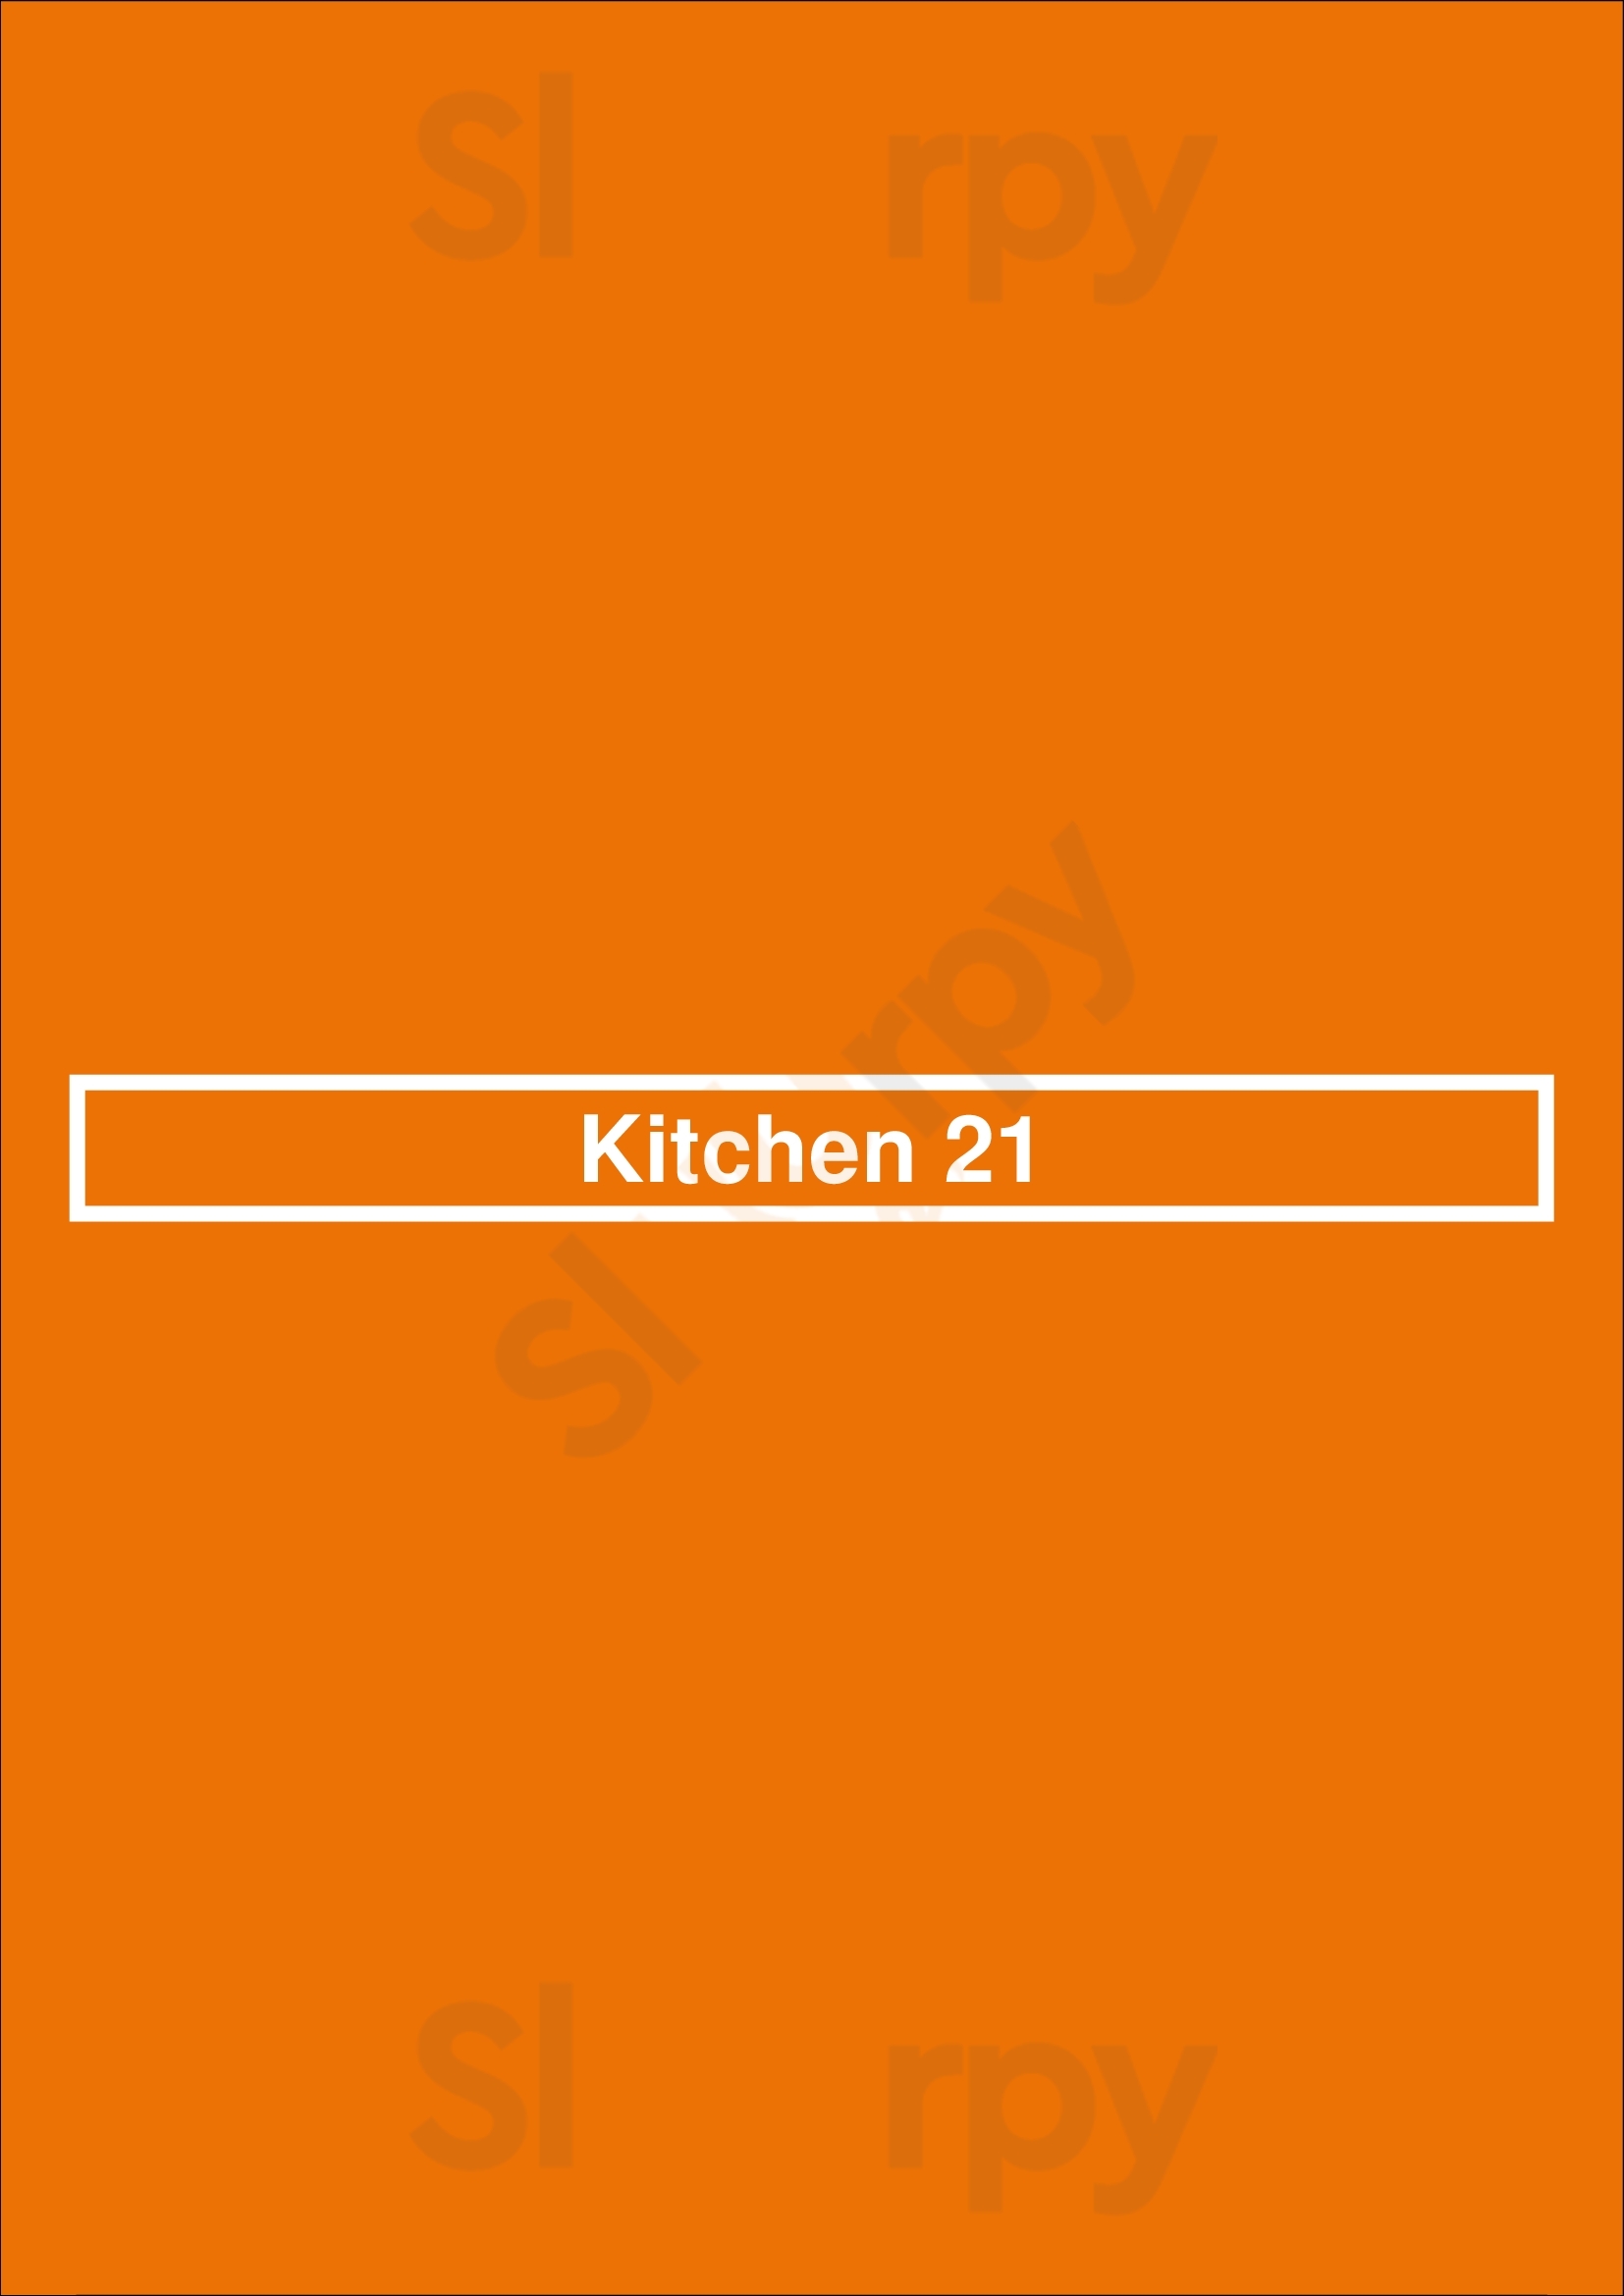 Kitchen 21 Brooklyn Menu - 1